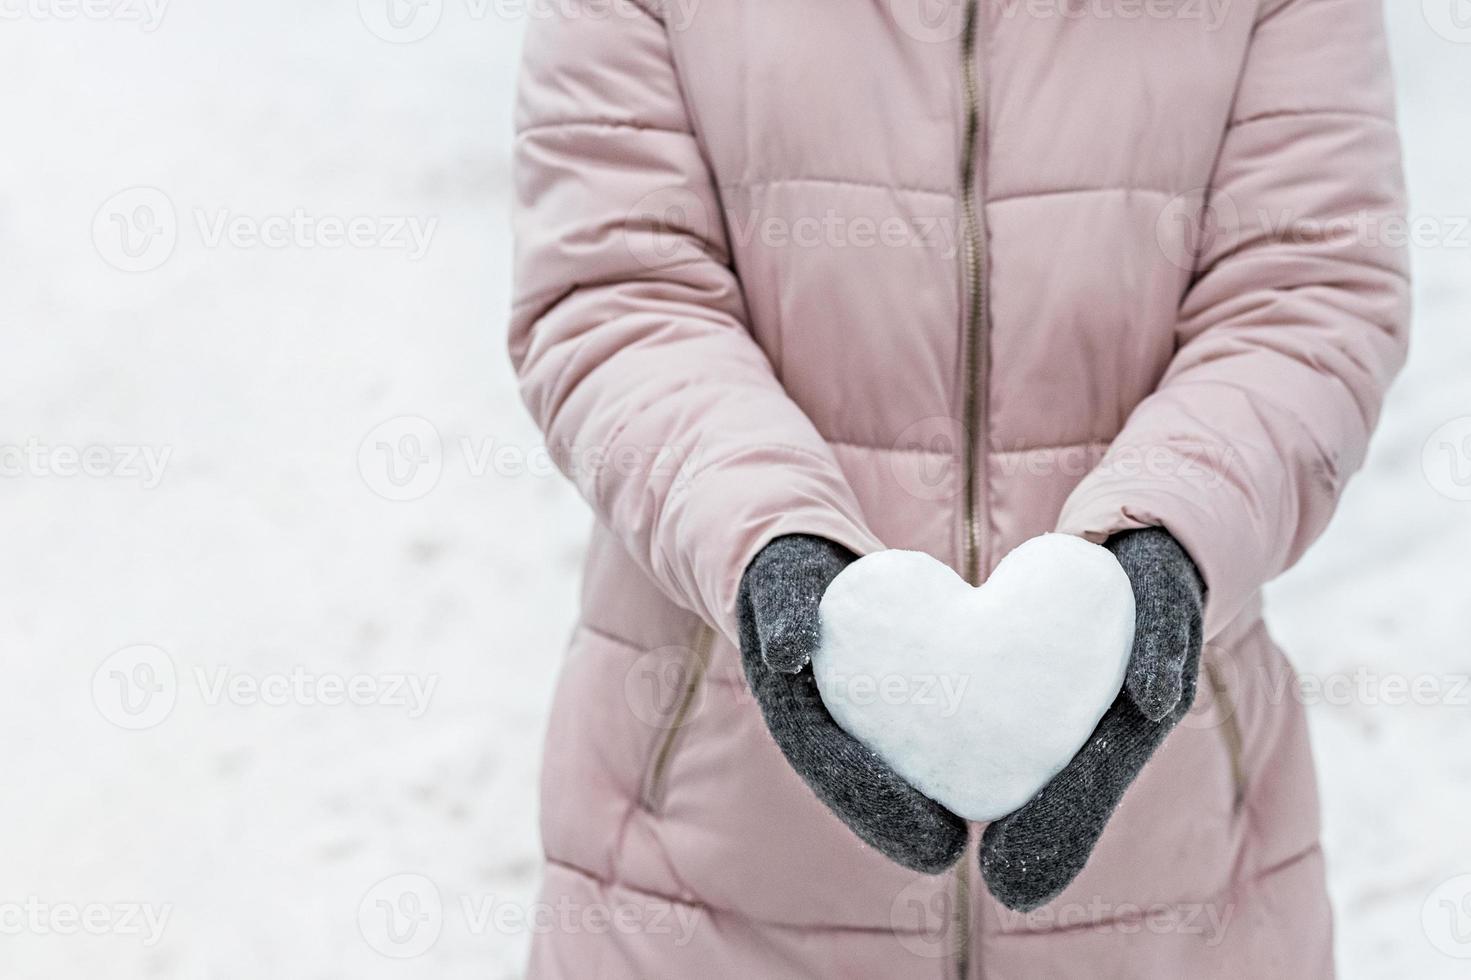 kvinnors händer i varma grå vantar med ett snövitt hjärta. begreppet alla hjärtans dag foto